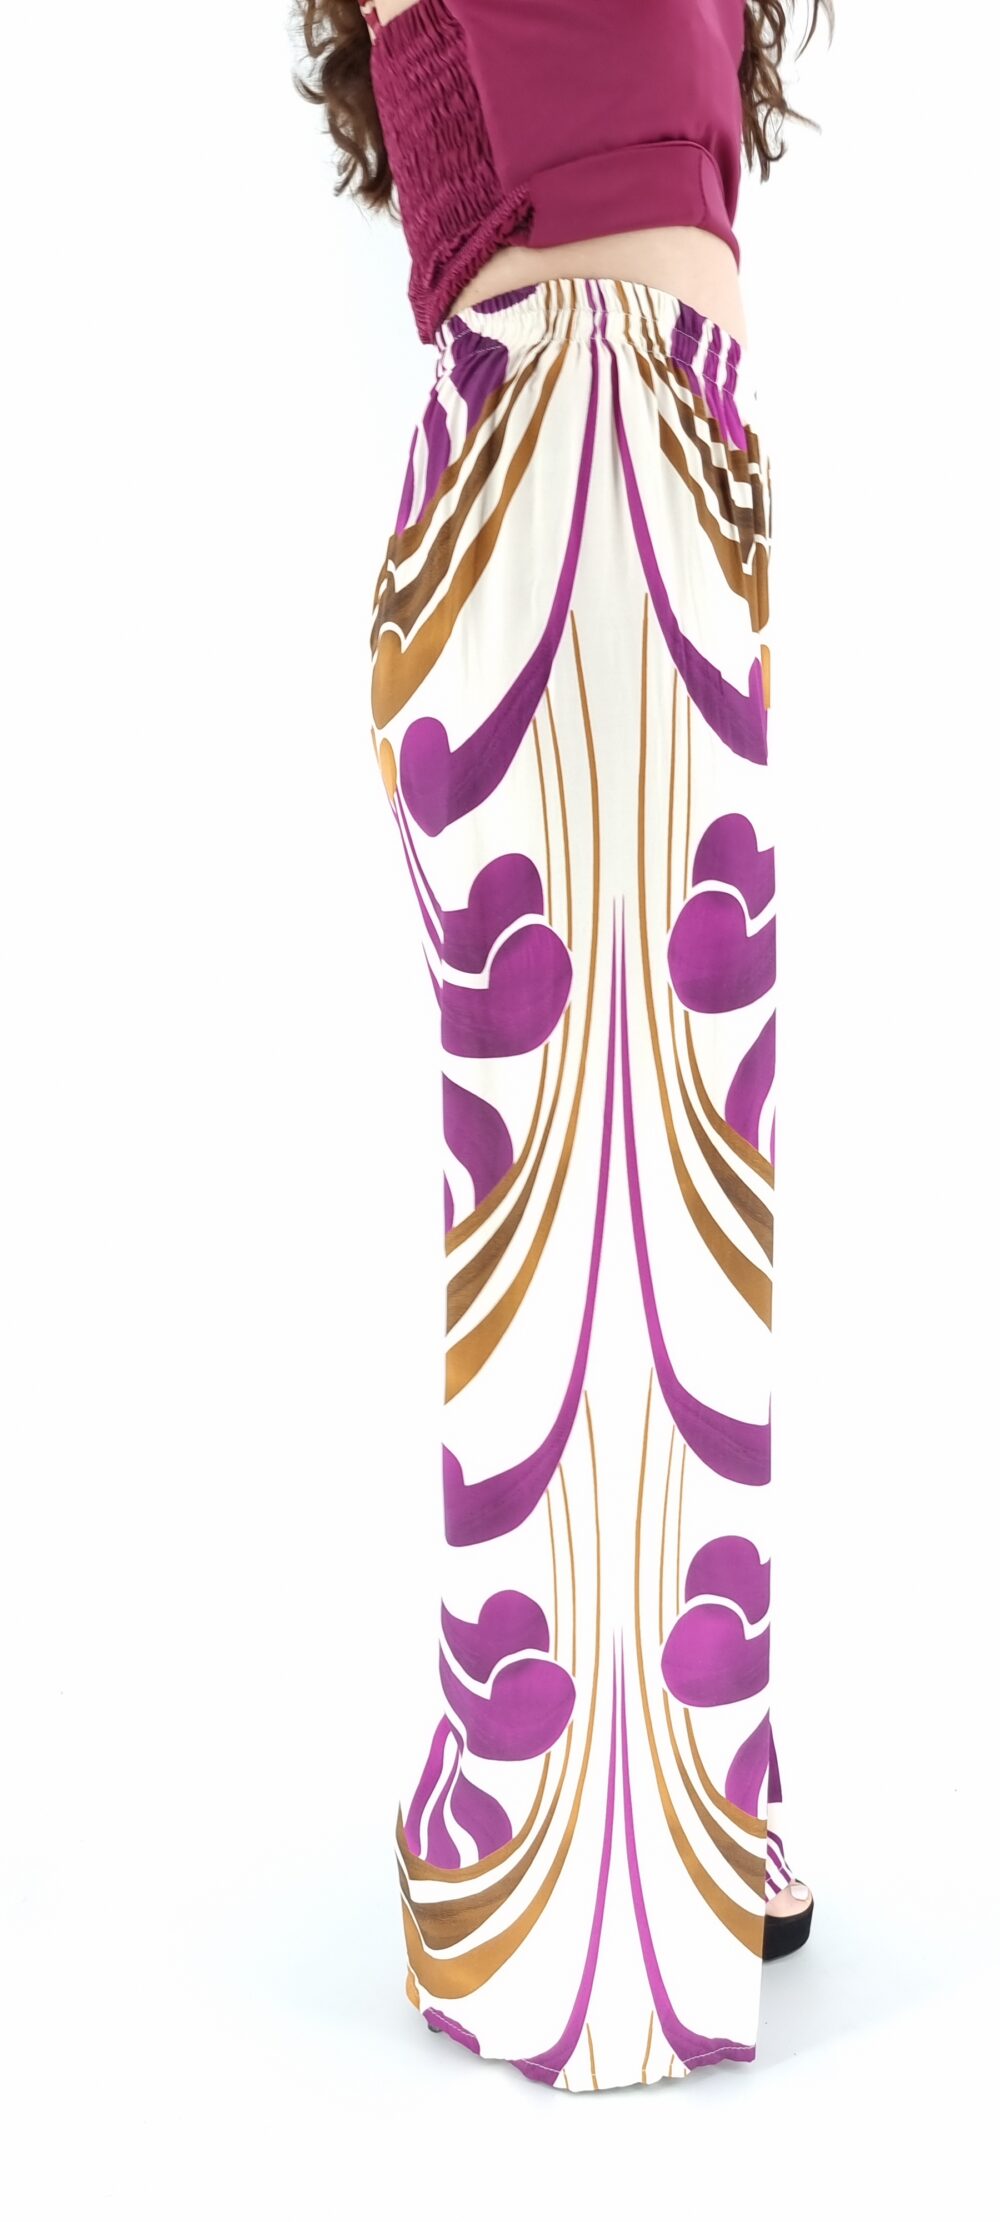 Παντελόνα πολύχρωμη με σχέδια μπεζ καφέ μωβ